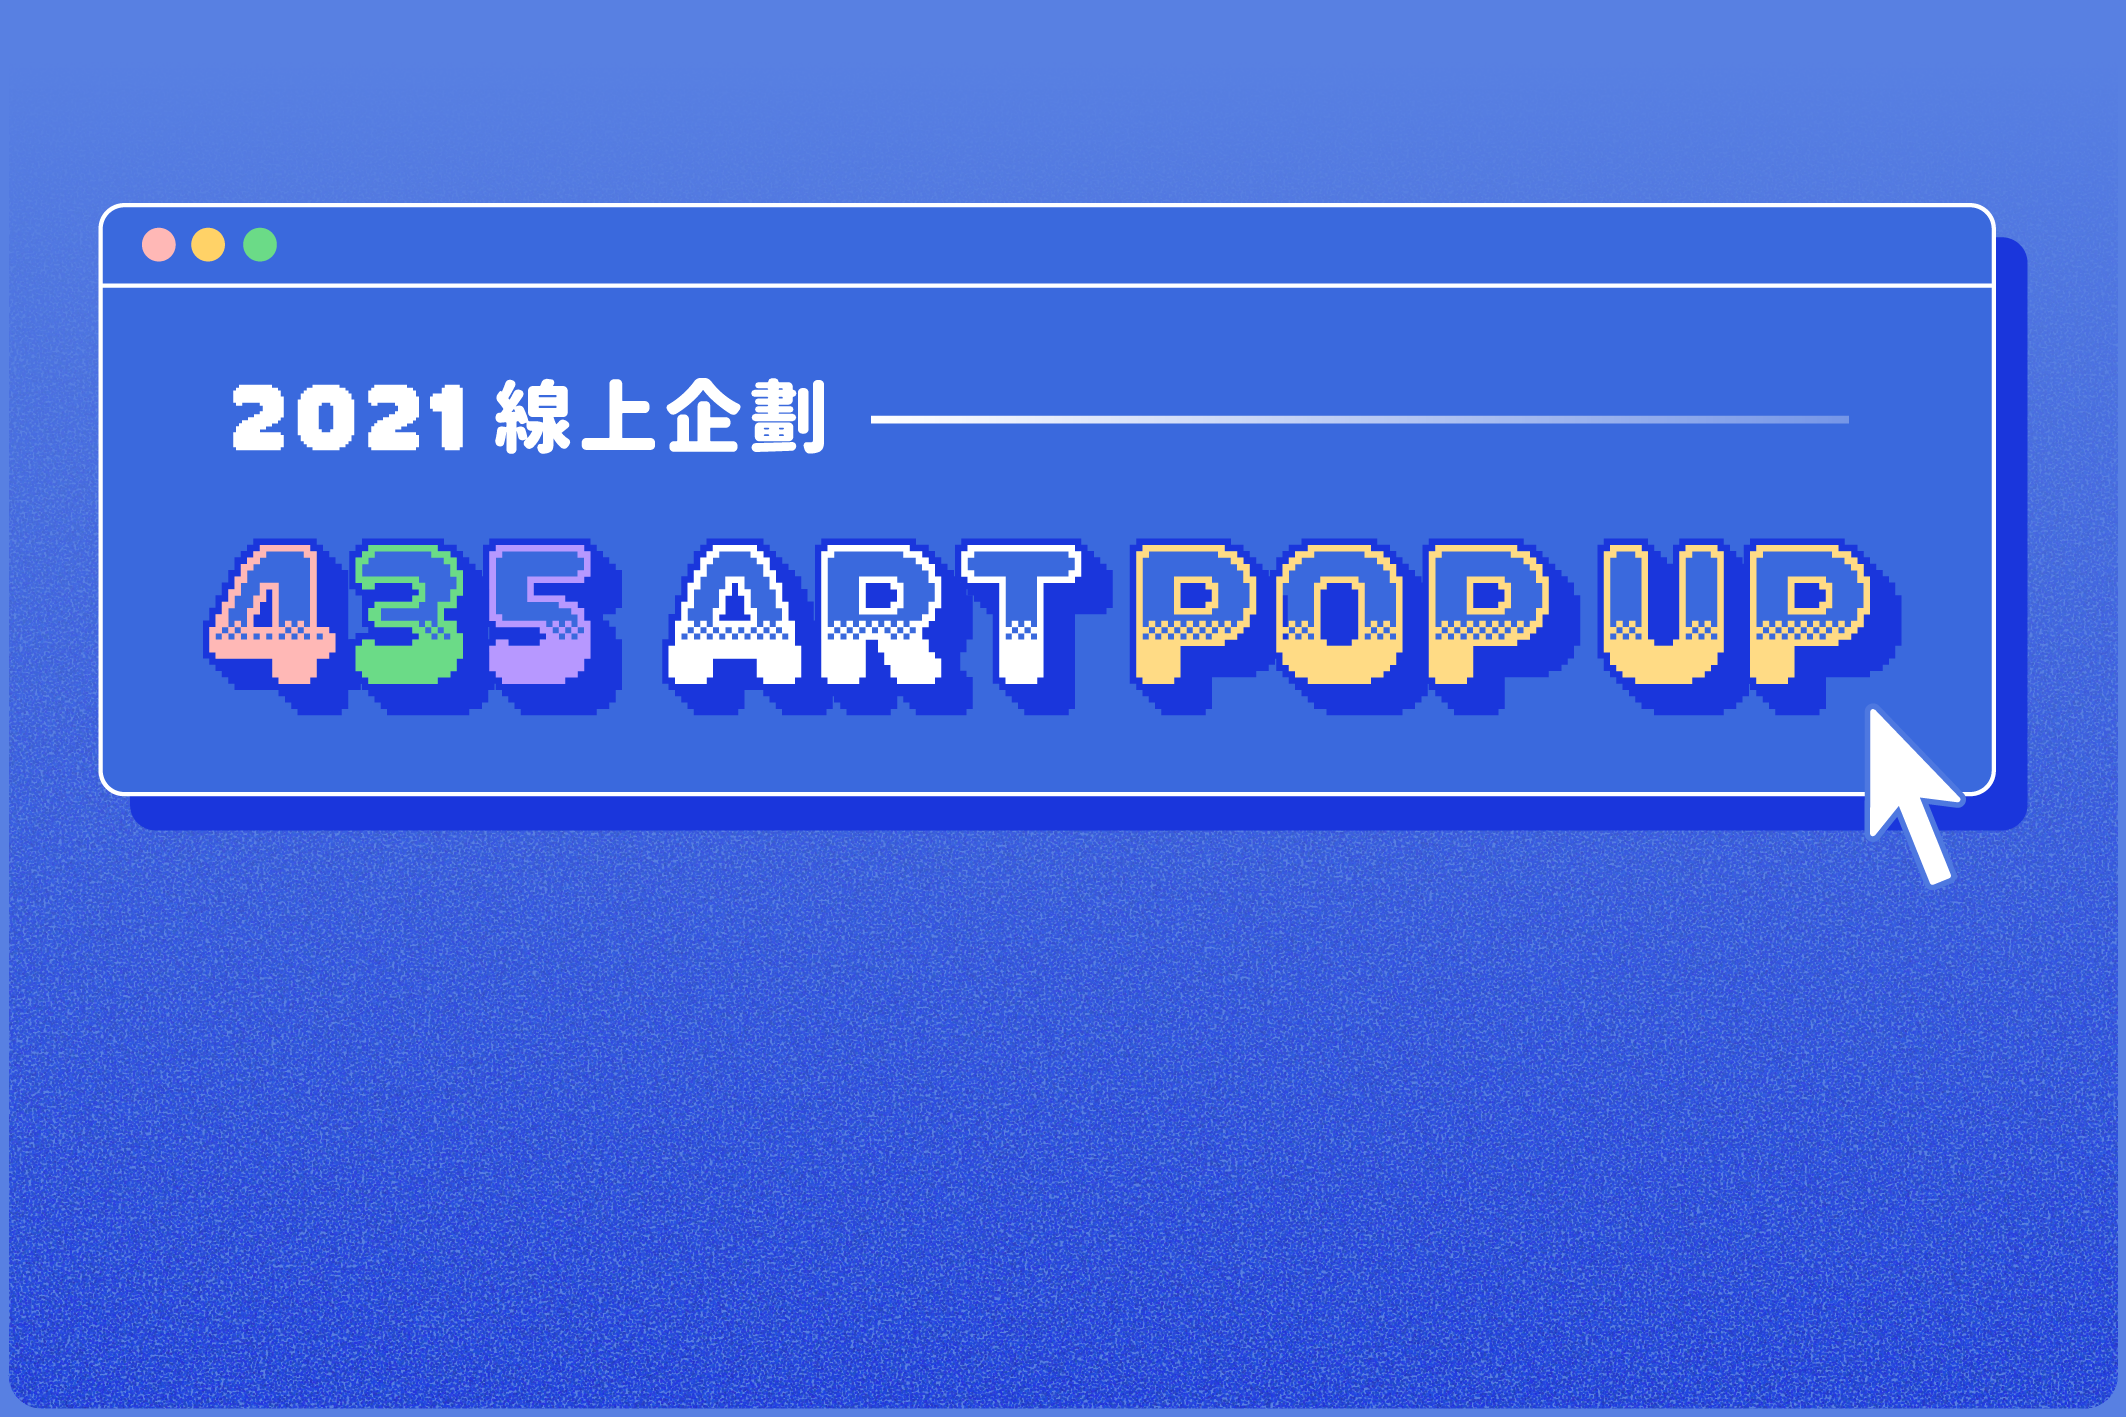 2021年 | 435 ART POP UP 全新企劃介紹